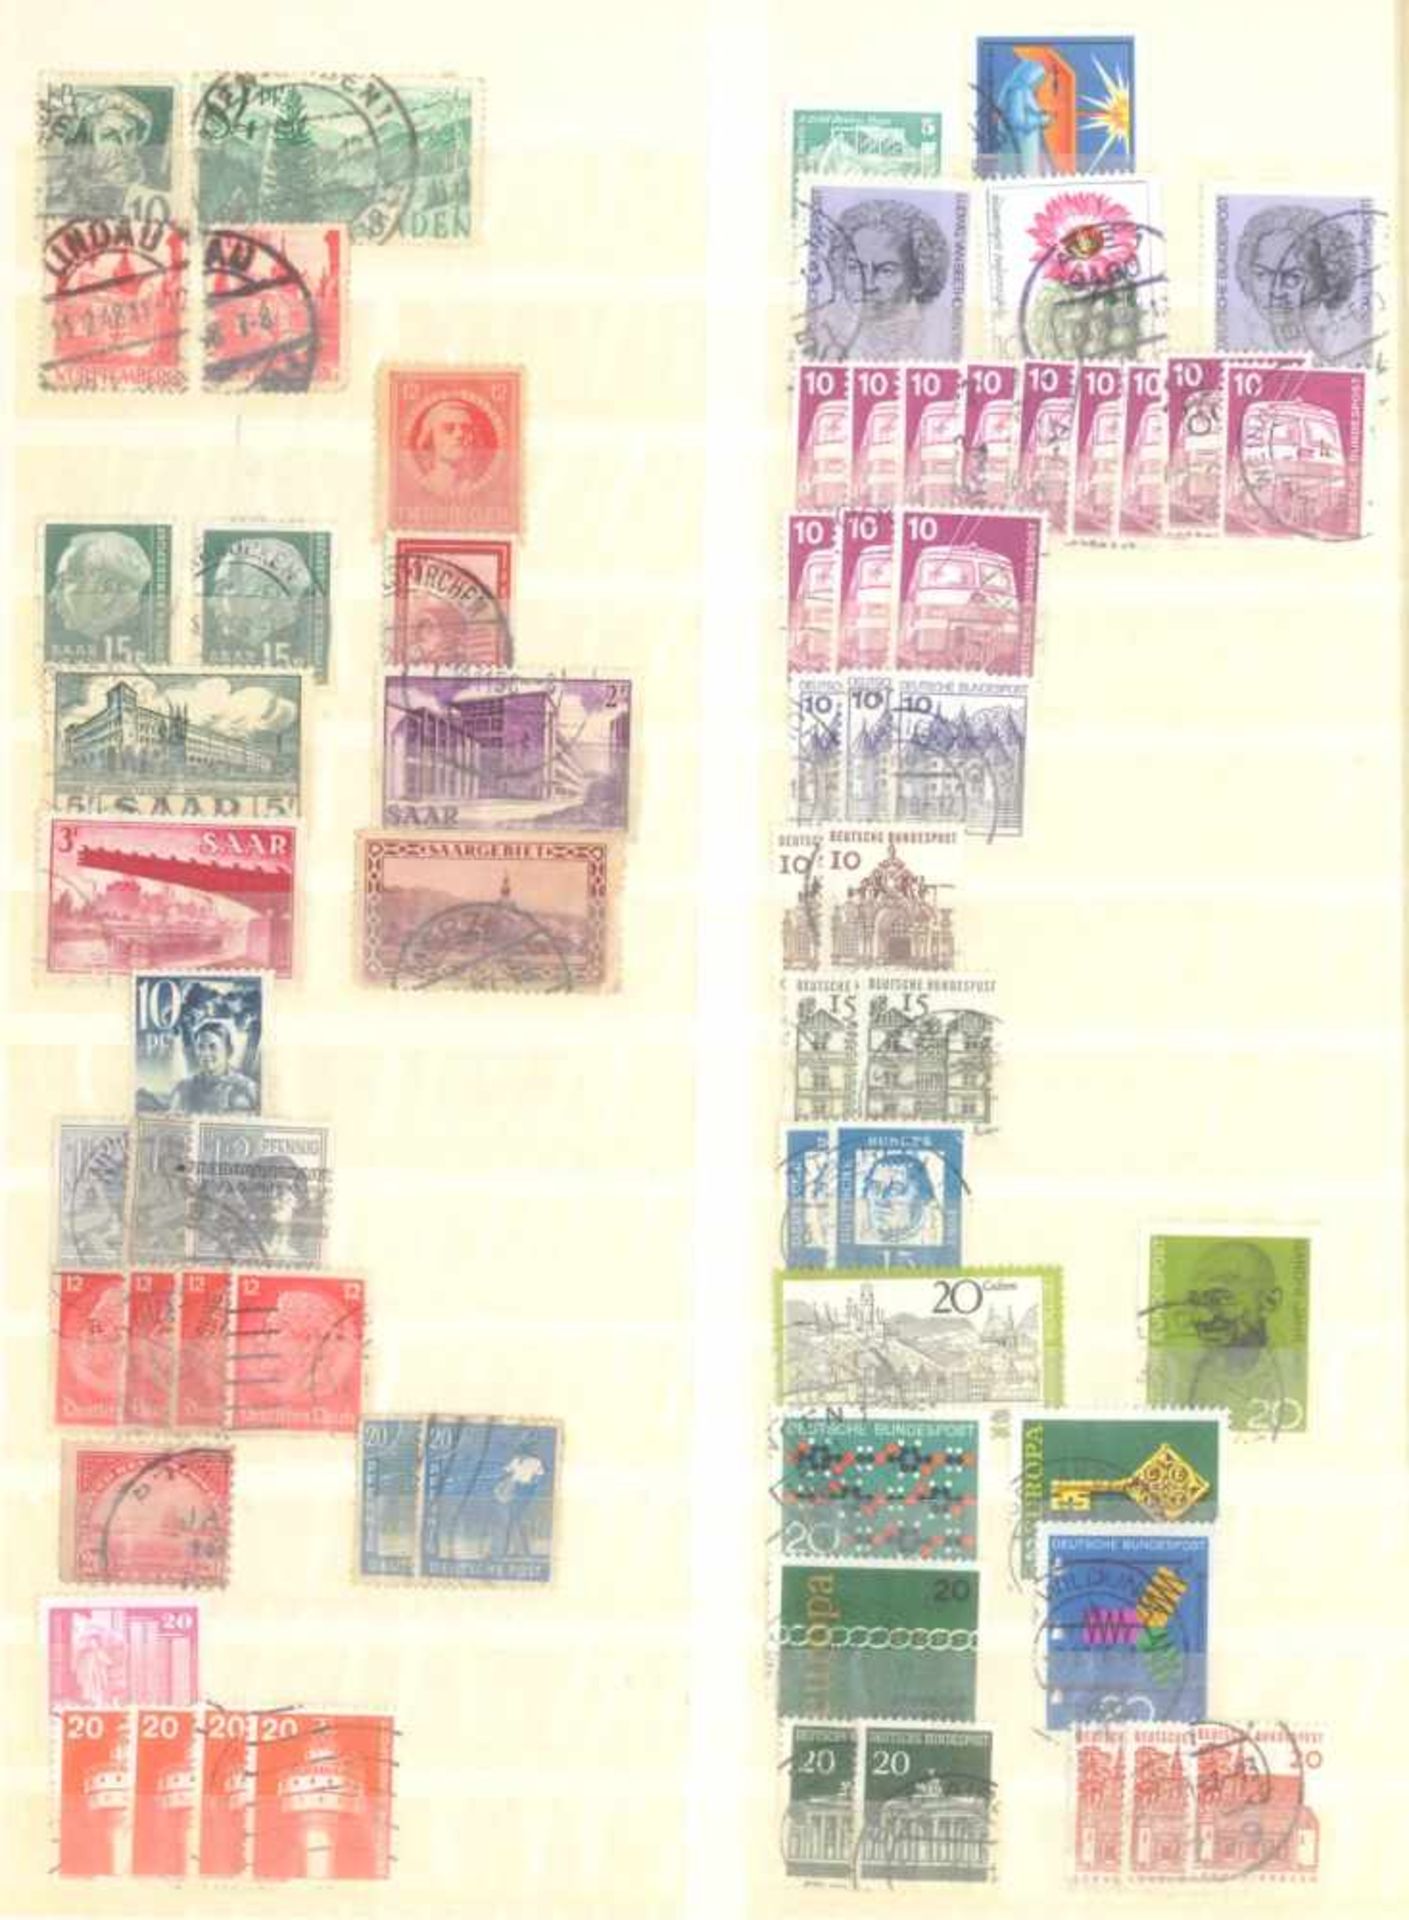 Kleiner Briefmarkennachlass Alle WeltIn 5 Steckalben, gestempelte Marken der BRD, Berlin, etwas - Image 2 of 12